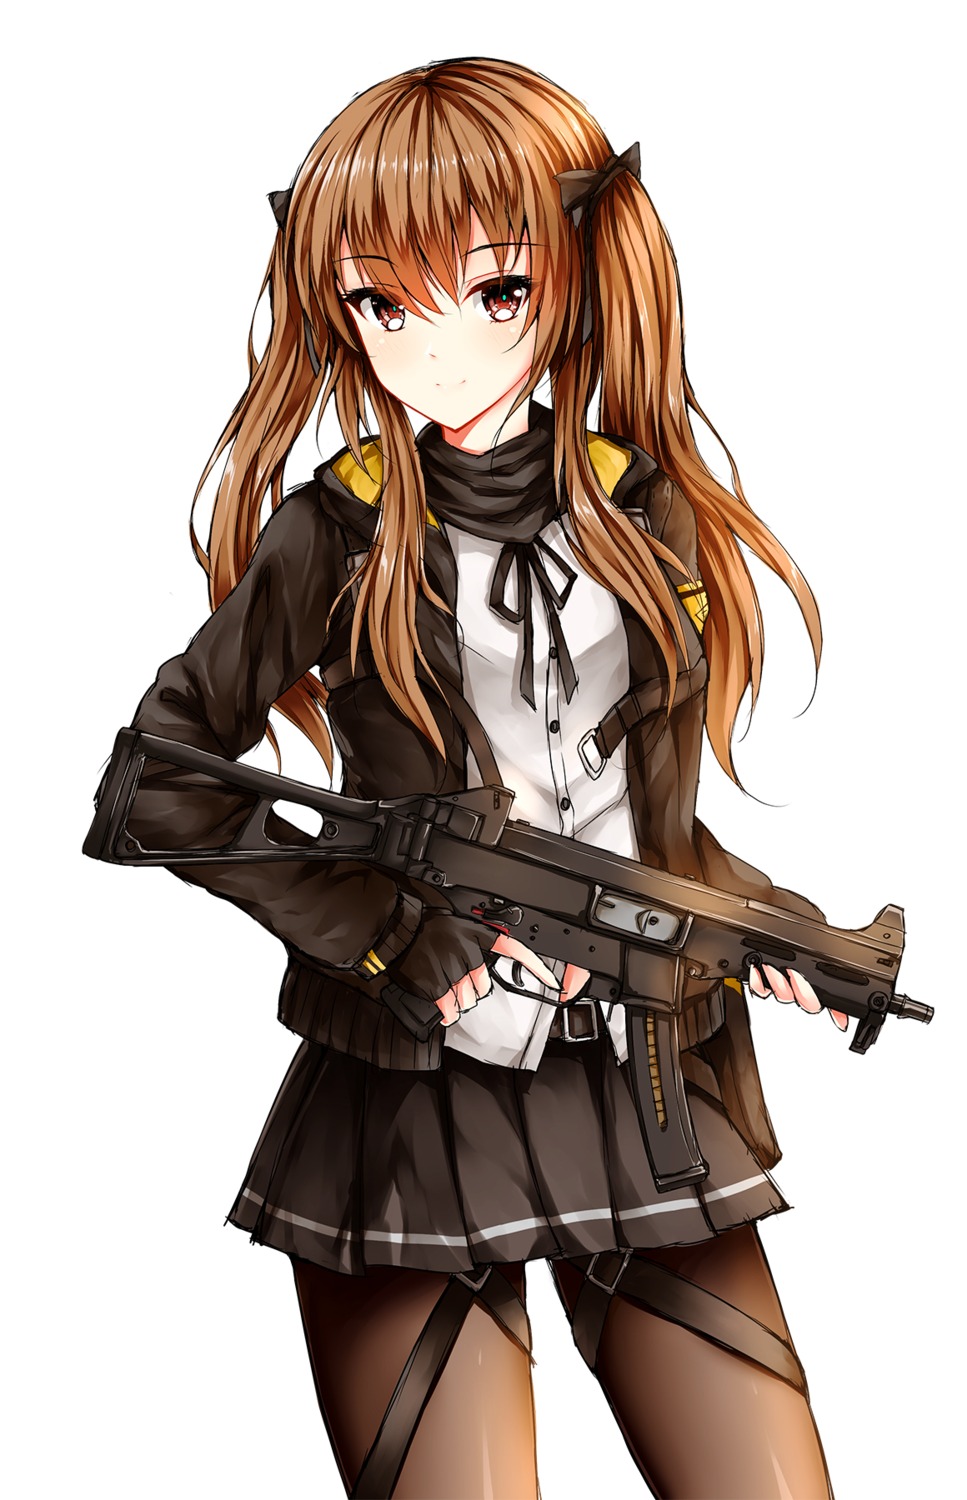 A Girl 46 A Gun